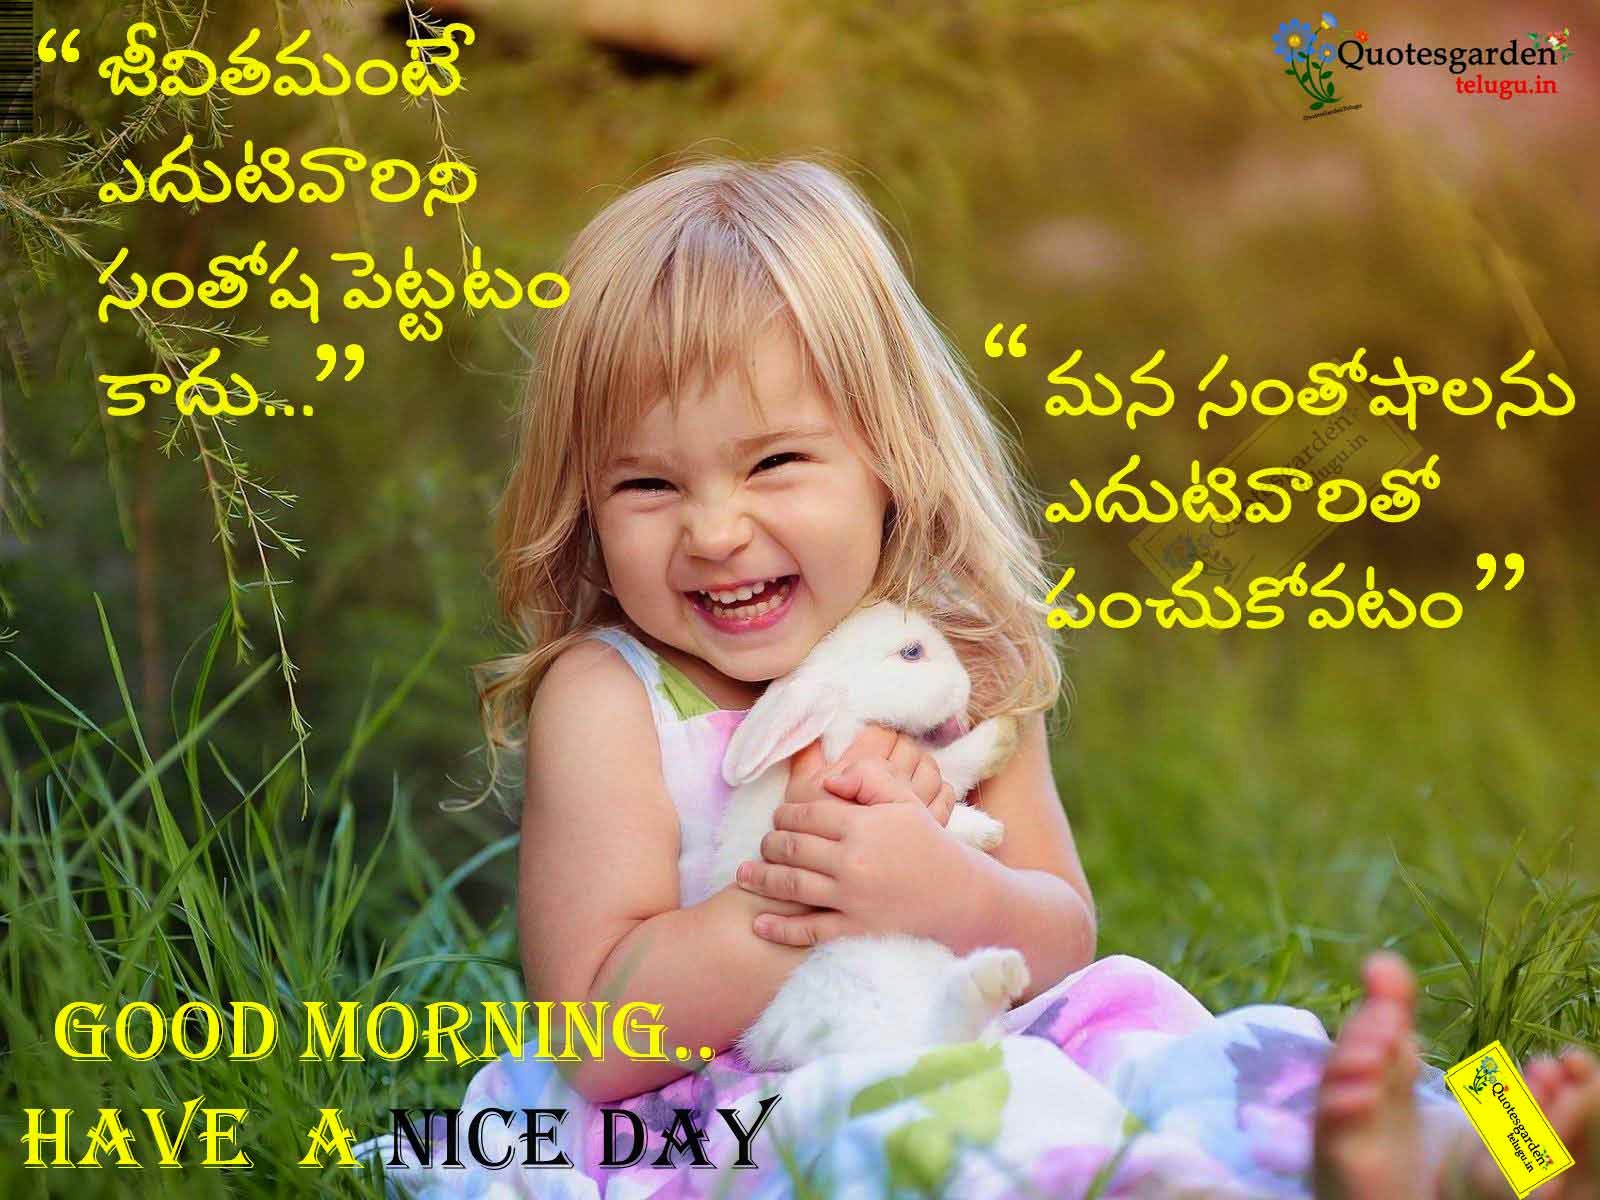 Good morning quotes in telugu | QUOTES GARDEN TELUGU | Telugu Quotes ...